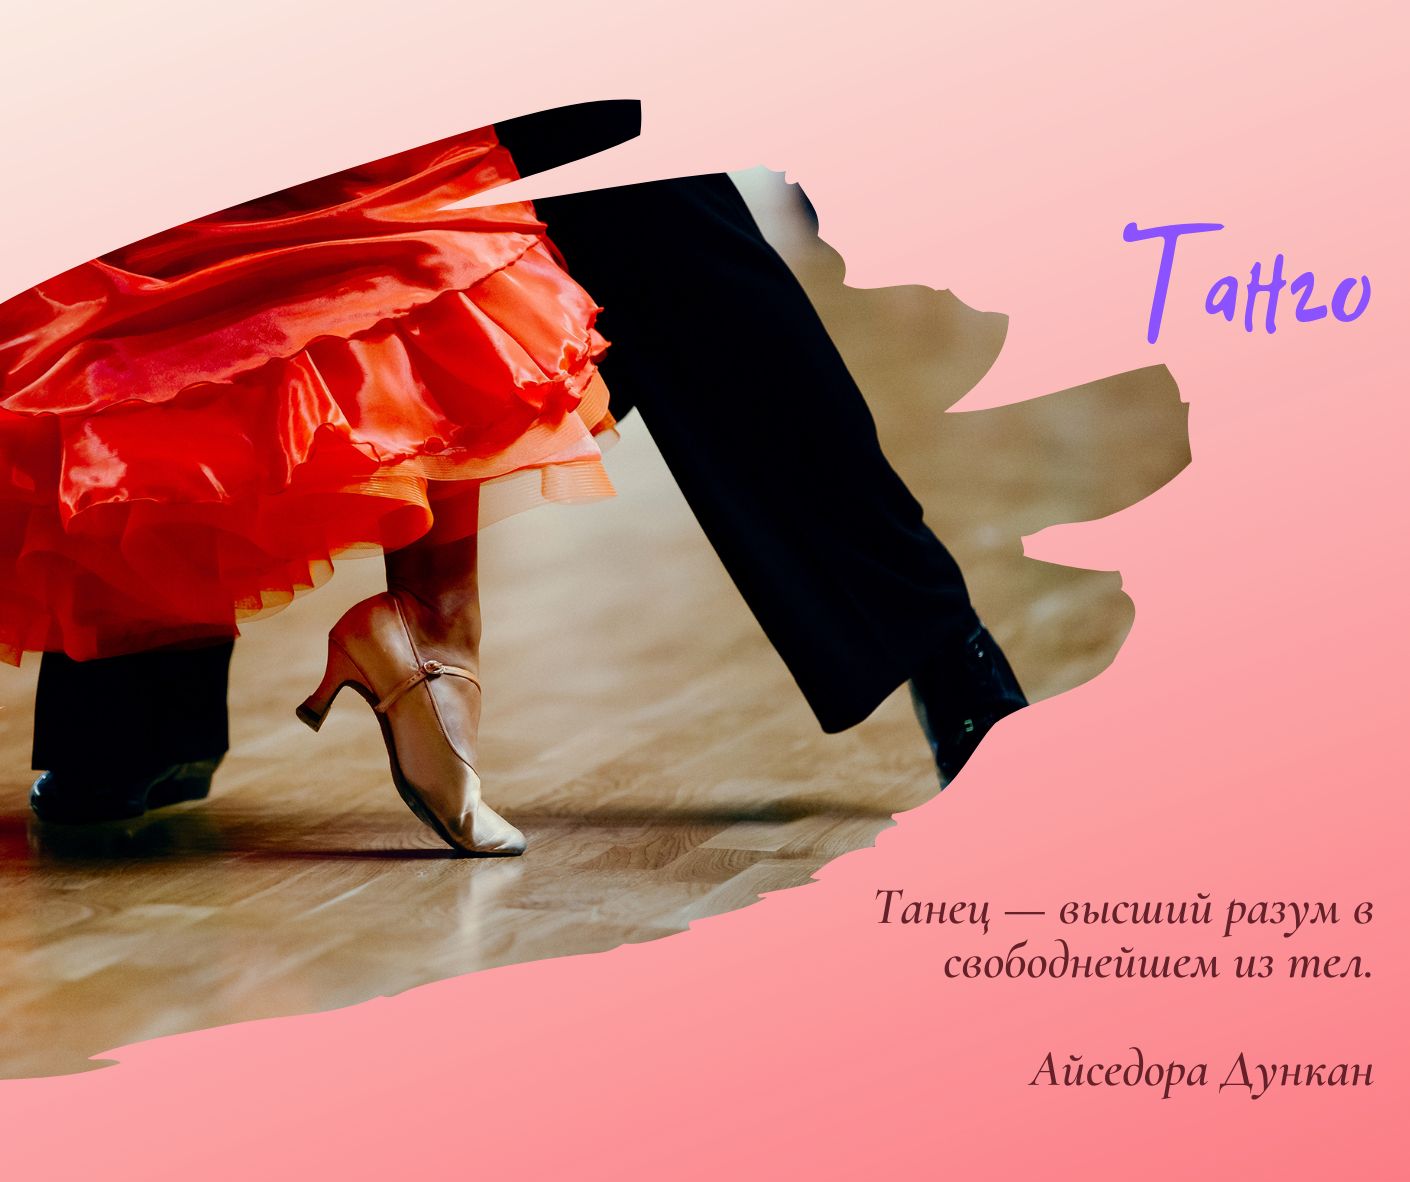 Танец Танго (Tango)